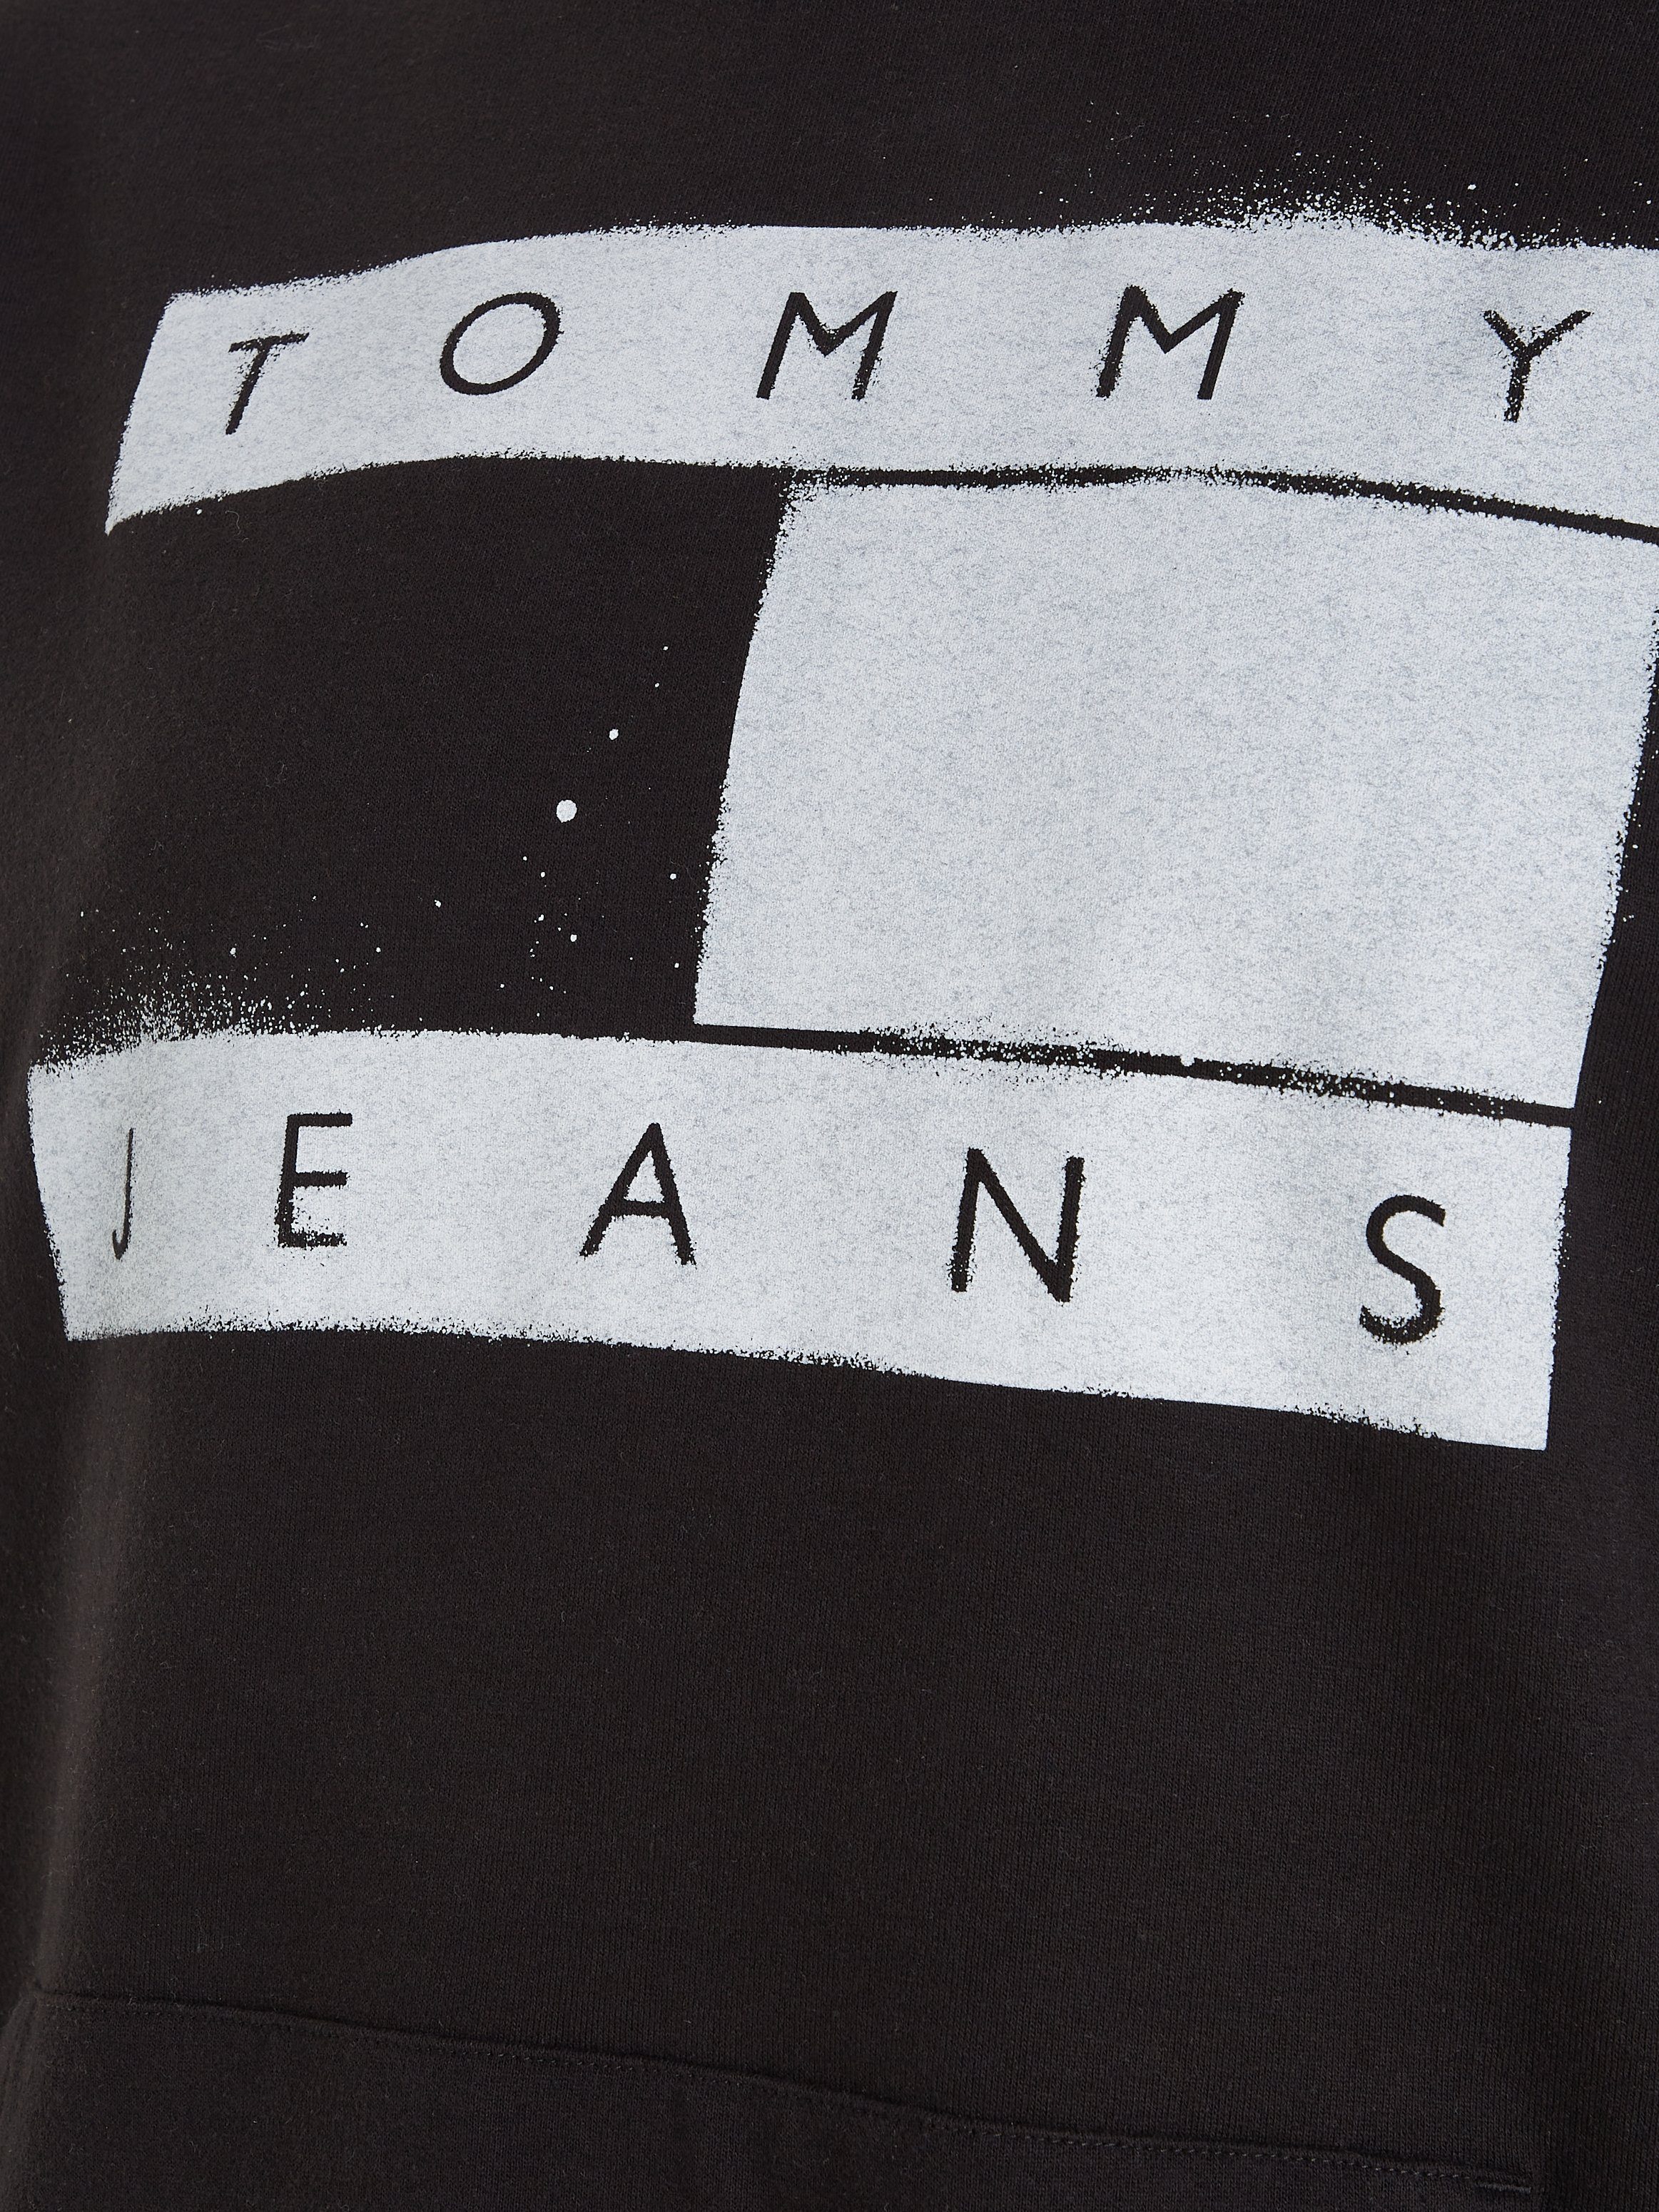 Plus SPRAY HOODIE Tommy FLAG PLUS Hoodie RLX Jeans TJM